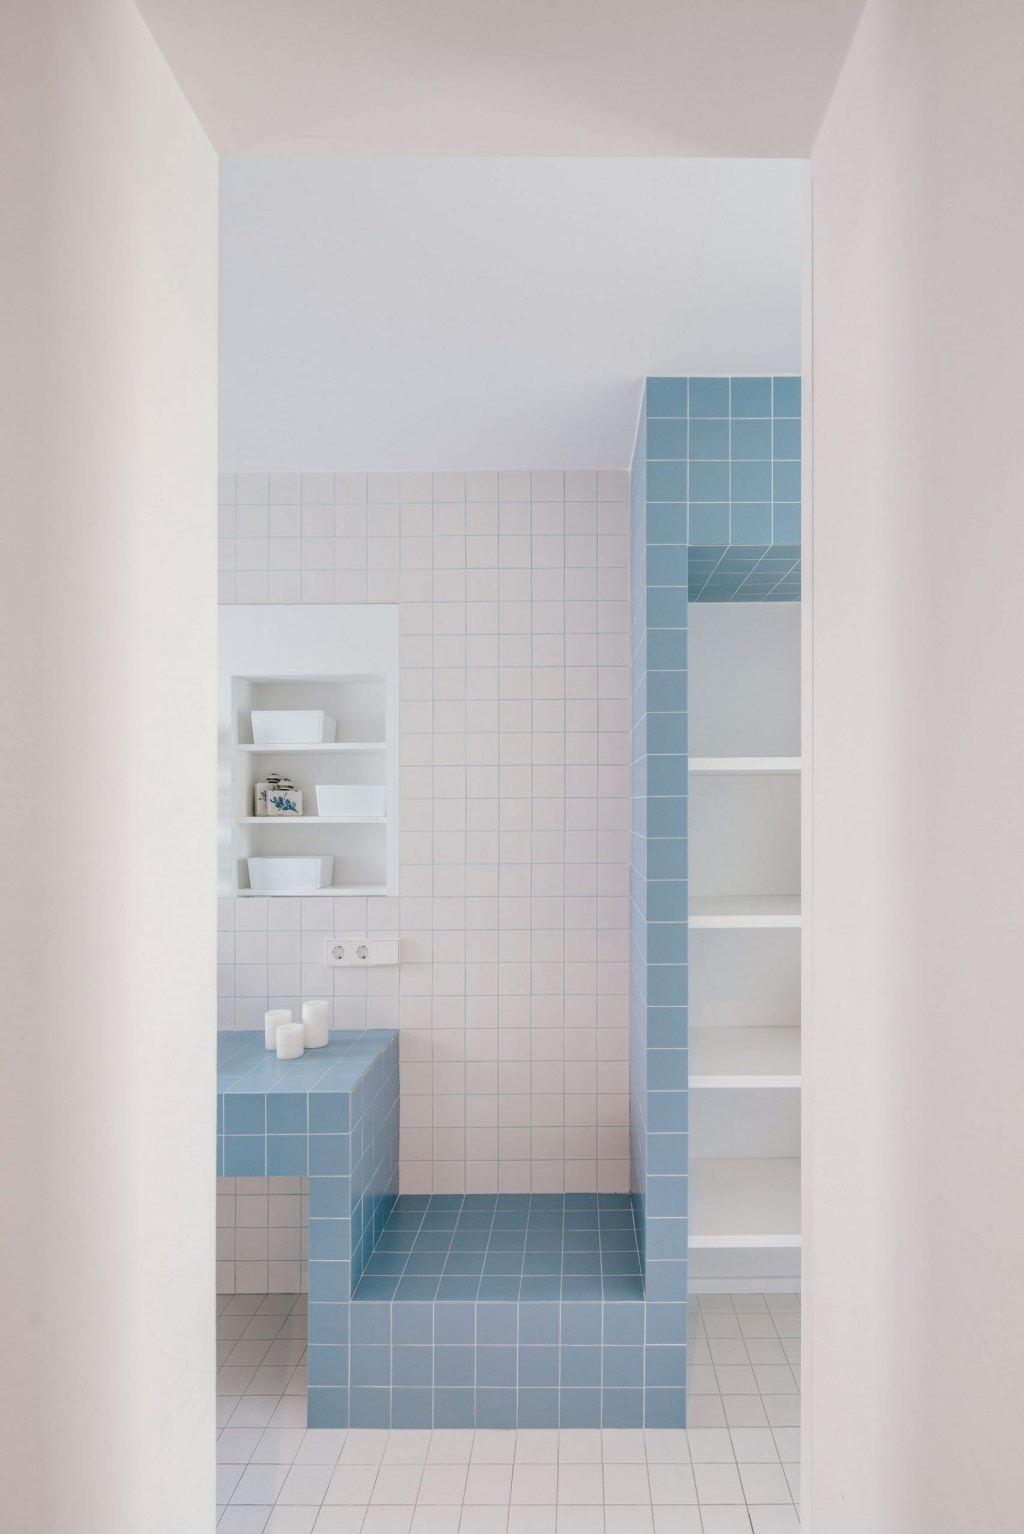 Banheiro com ladrilhos azuis e brancos